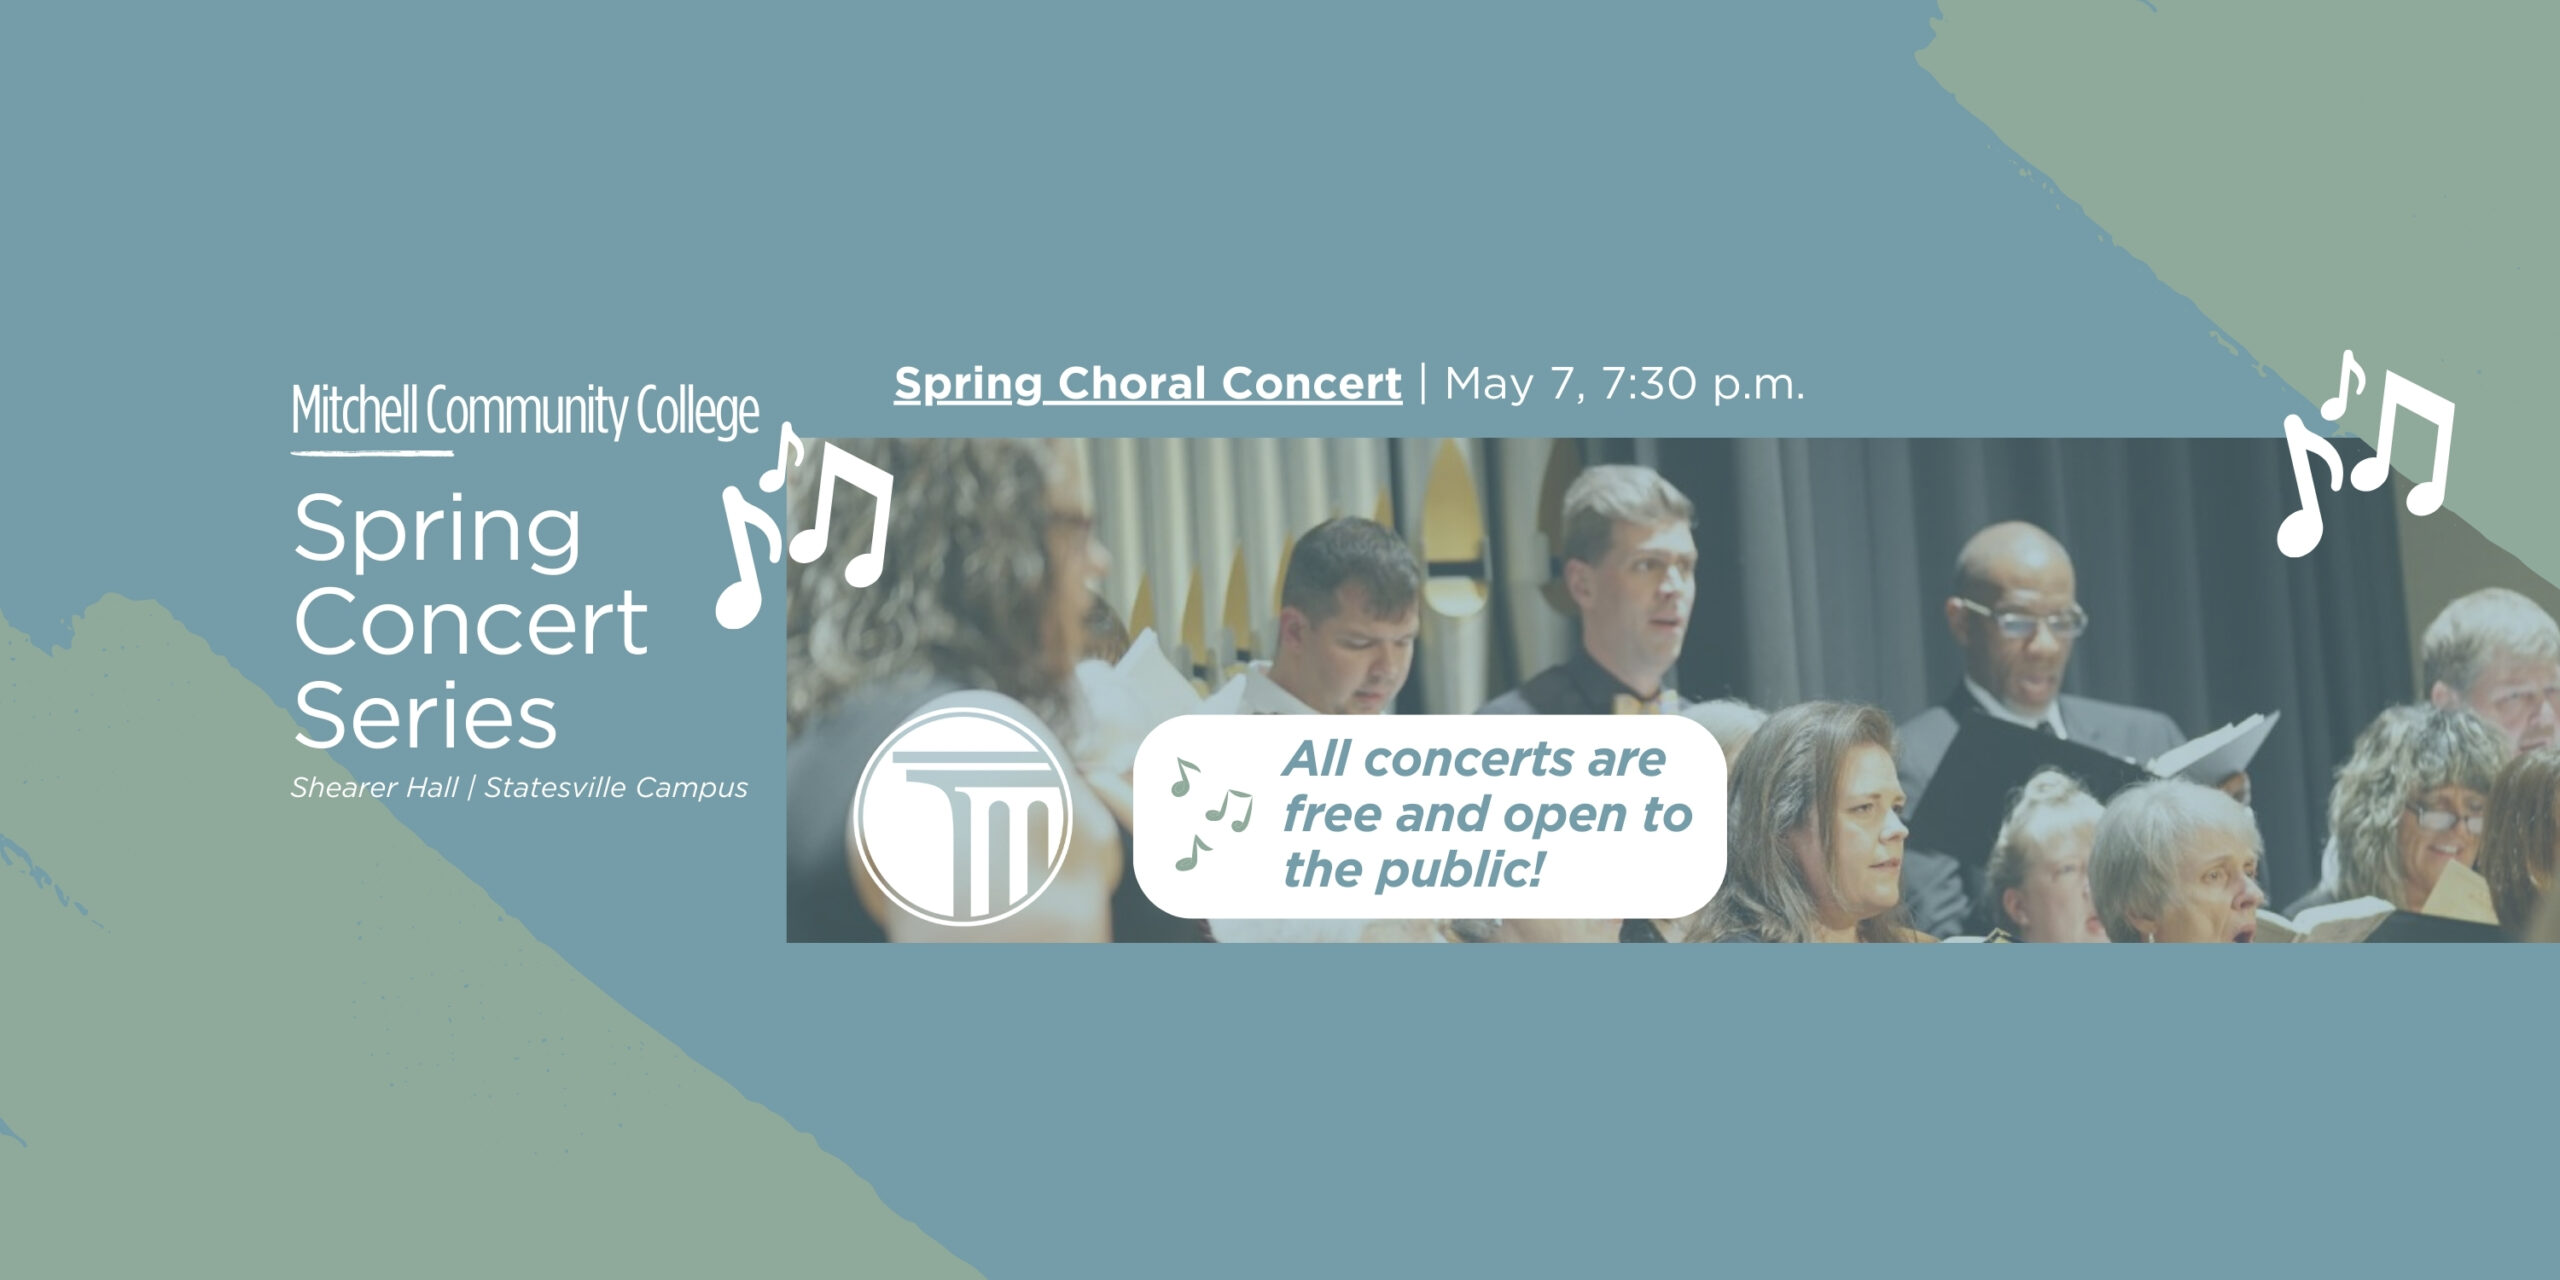 "Mitchell Community College | Bahar Konseri Serisi - Shearer Hall | Statesville | Bahar Koro Konseri - 7 Mayıs 7:30 | Tüm konserler ücretsiz ve halka açıktır!" yazan pankart.